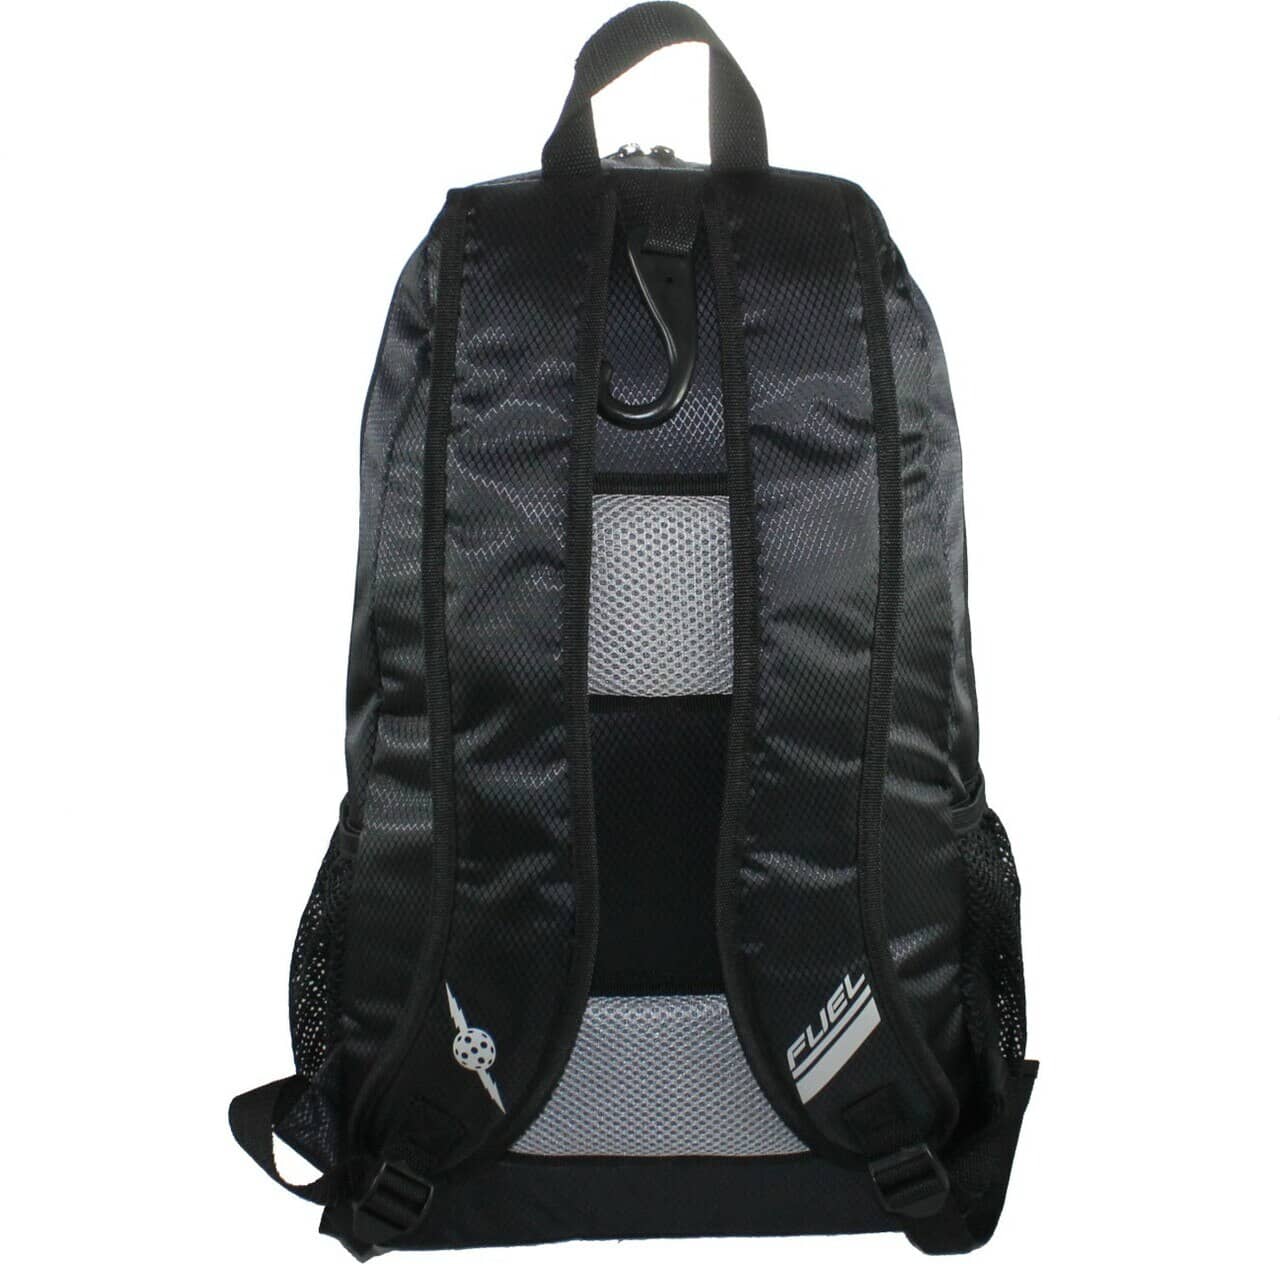 ProLite Fuel Backpack